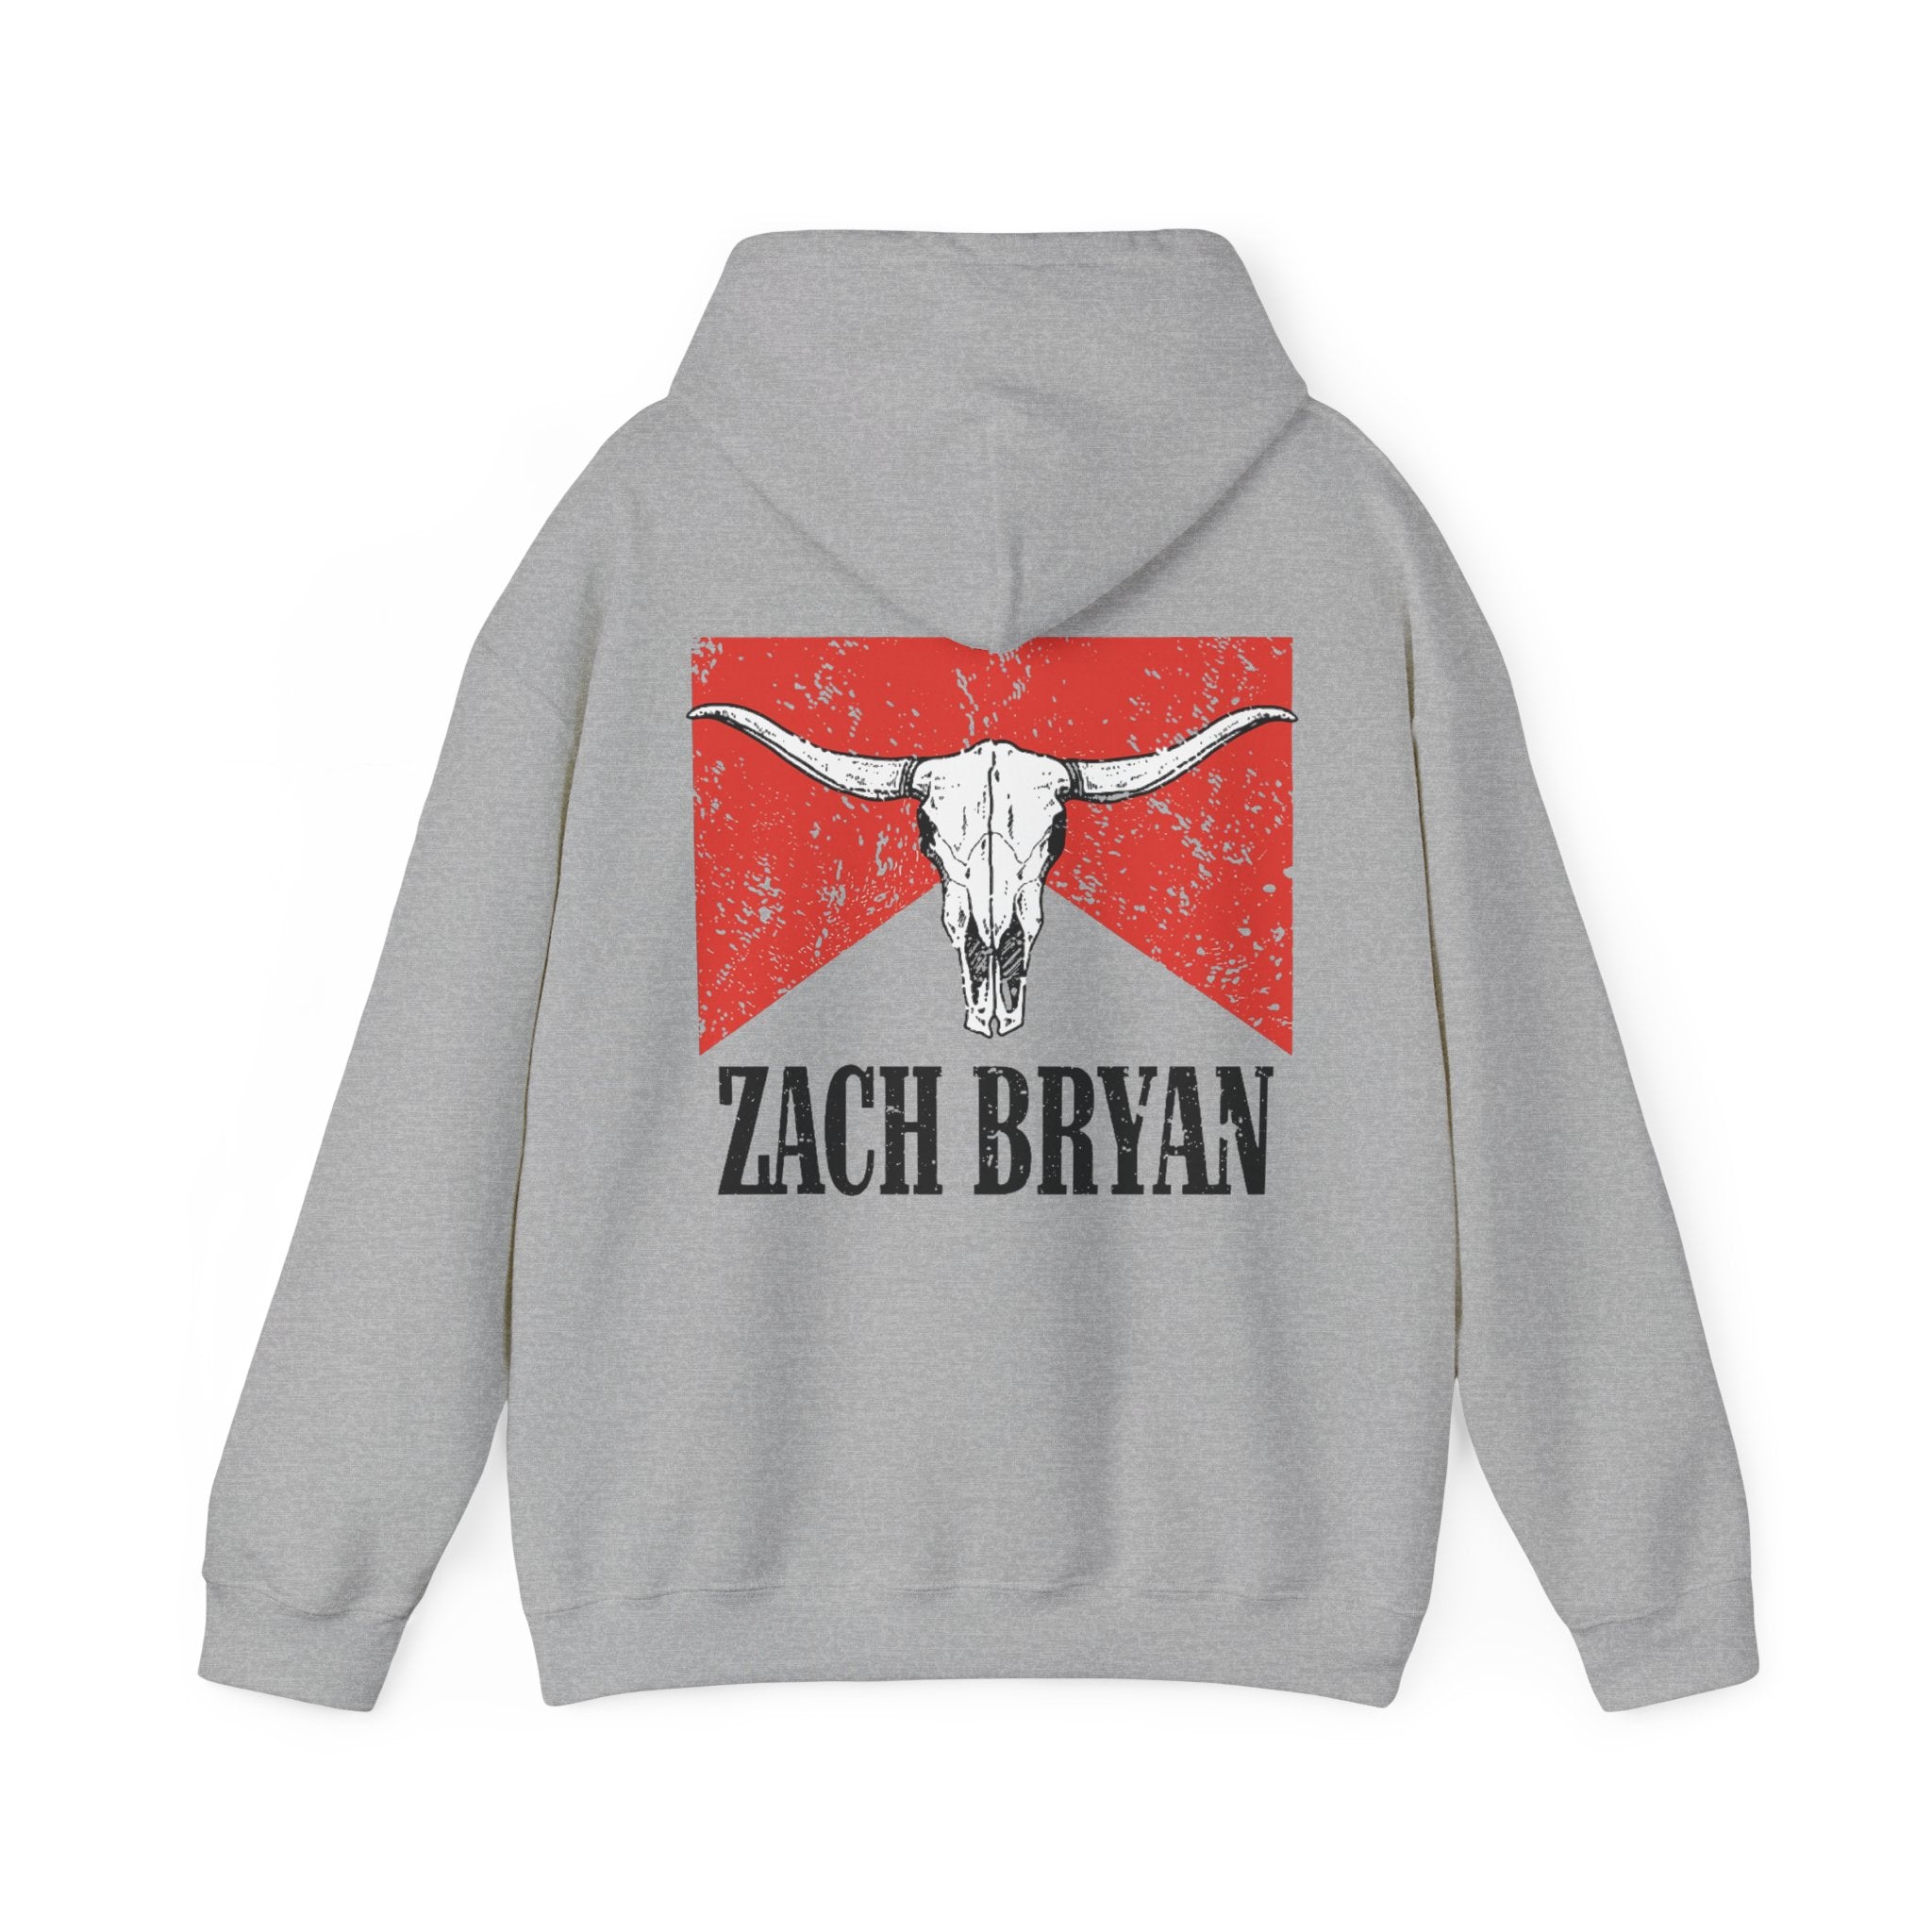 Zach Bryan Hoodie 1 | Zach Bryan